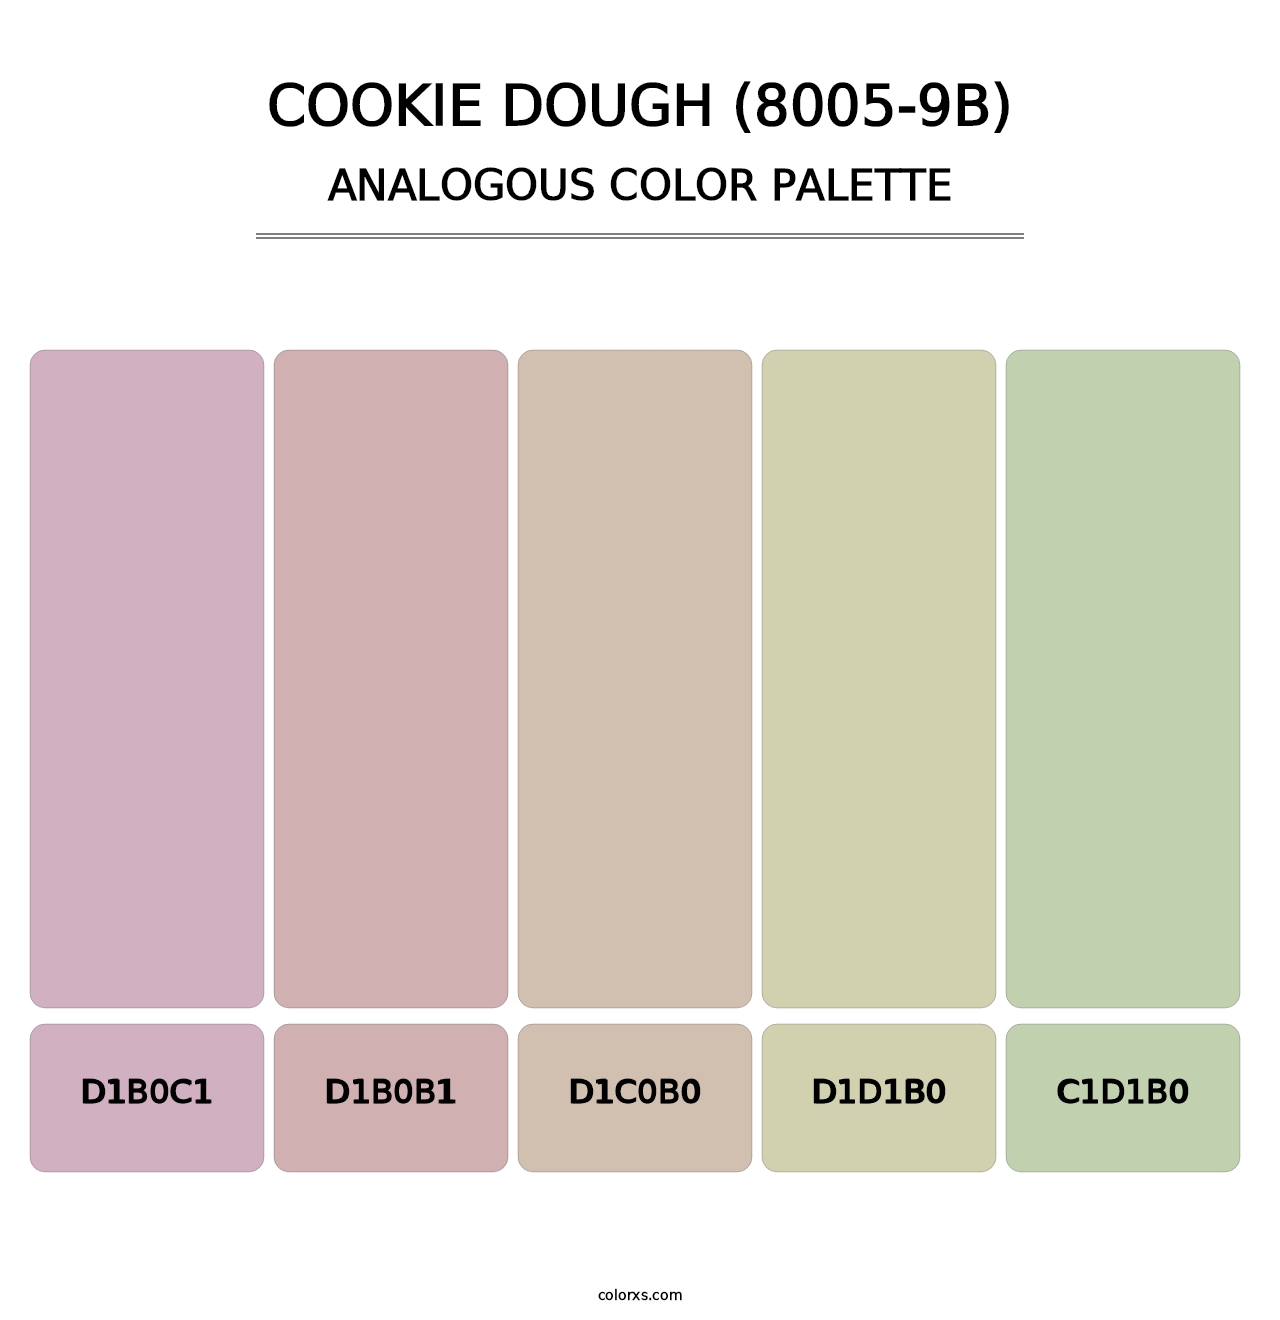 Cookie Dough (8005-9B) - Analogous Color Palette